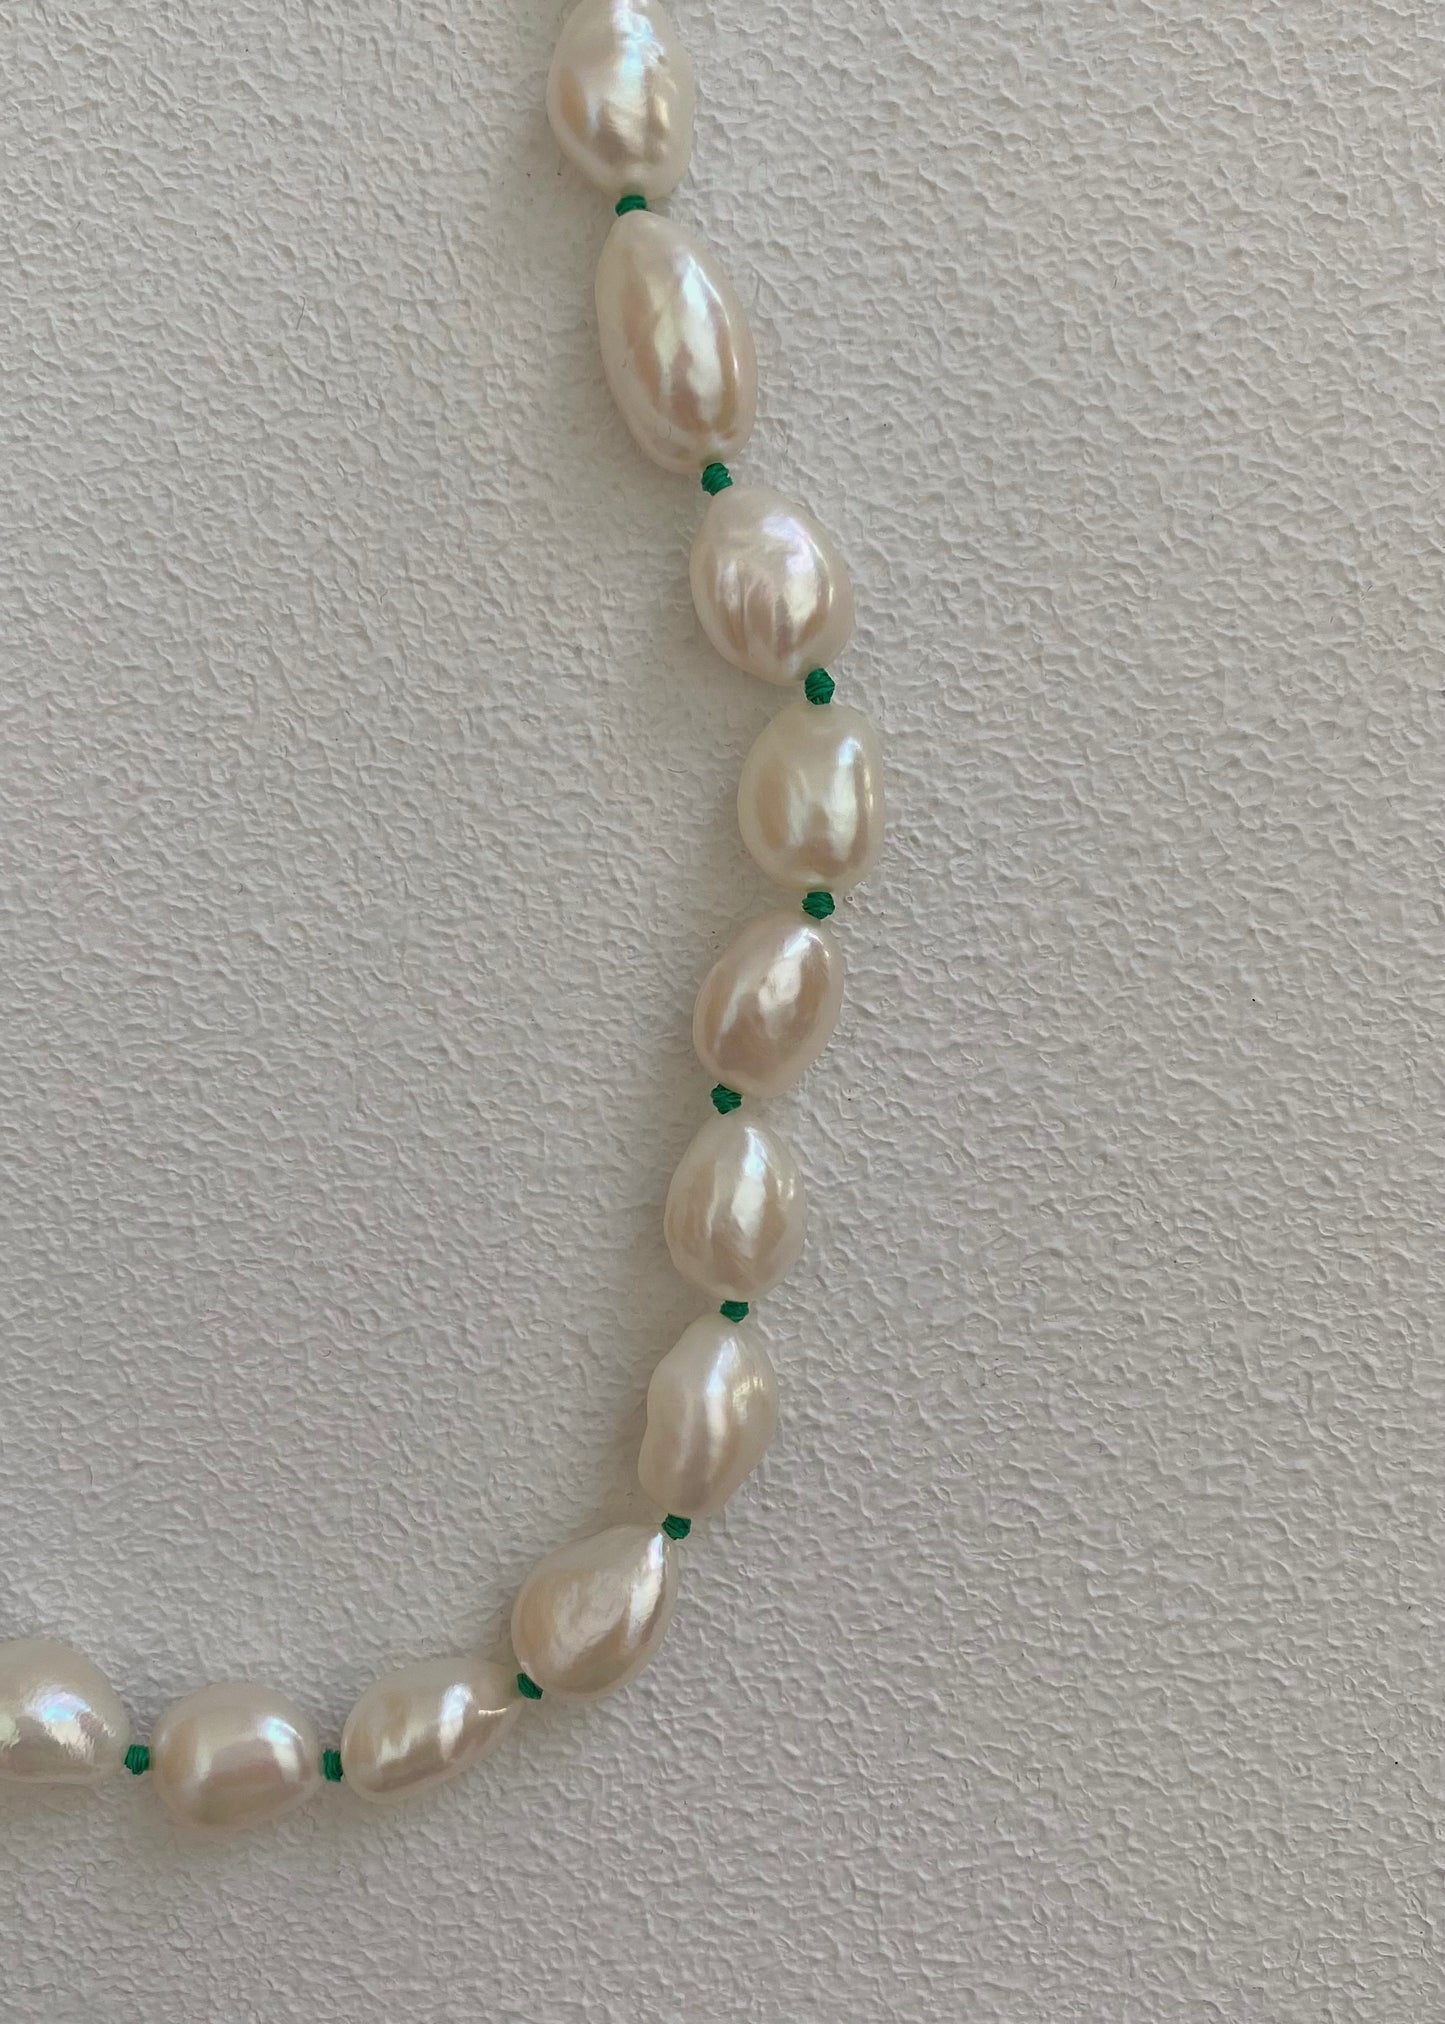 Escape pearl necklace